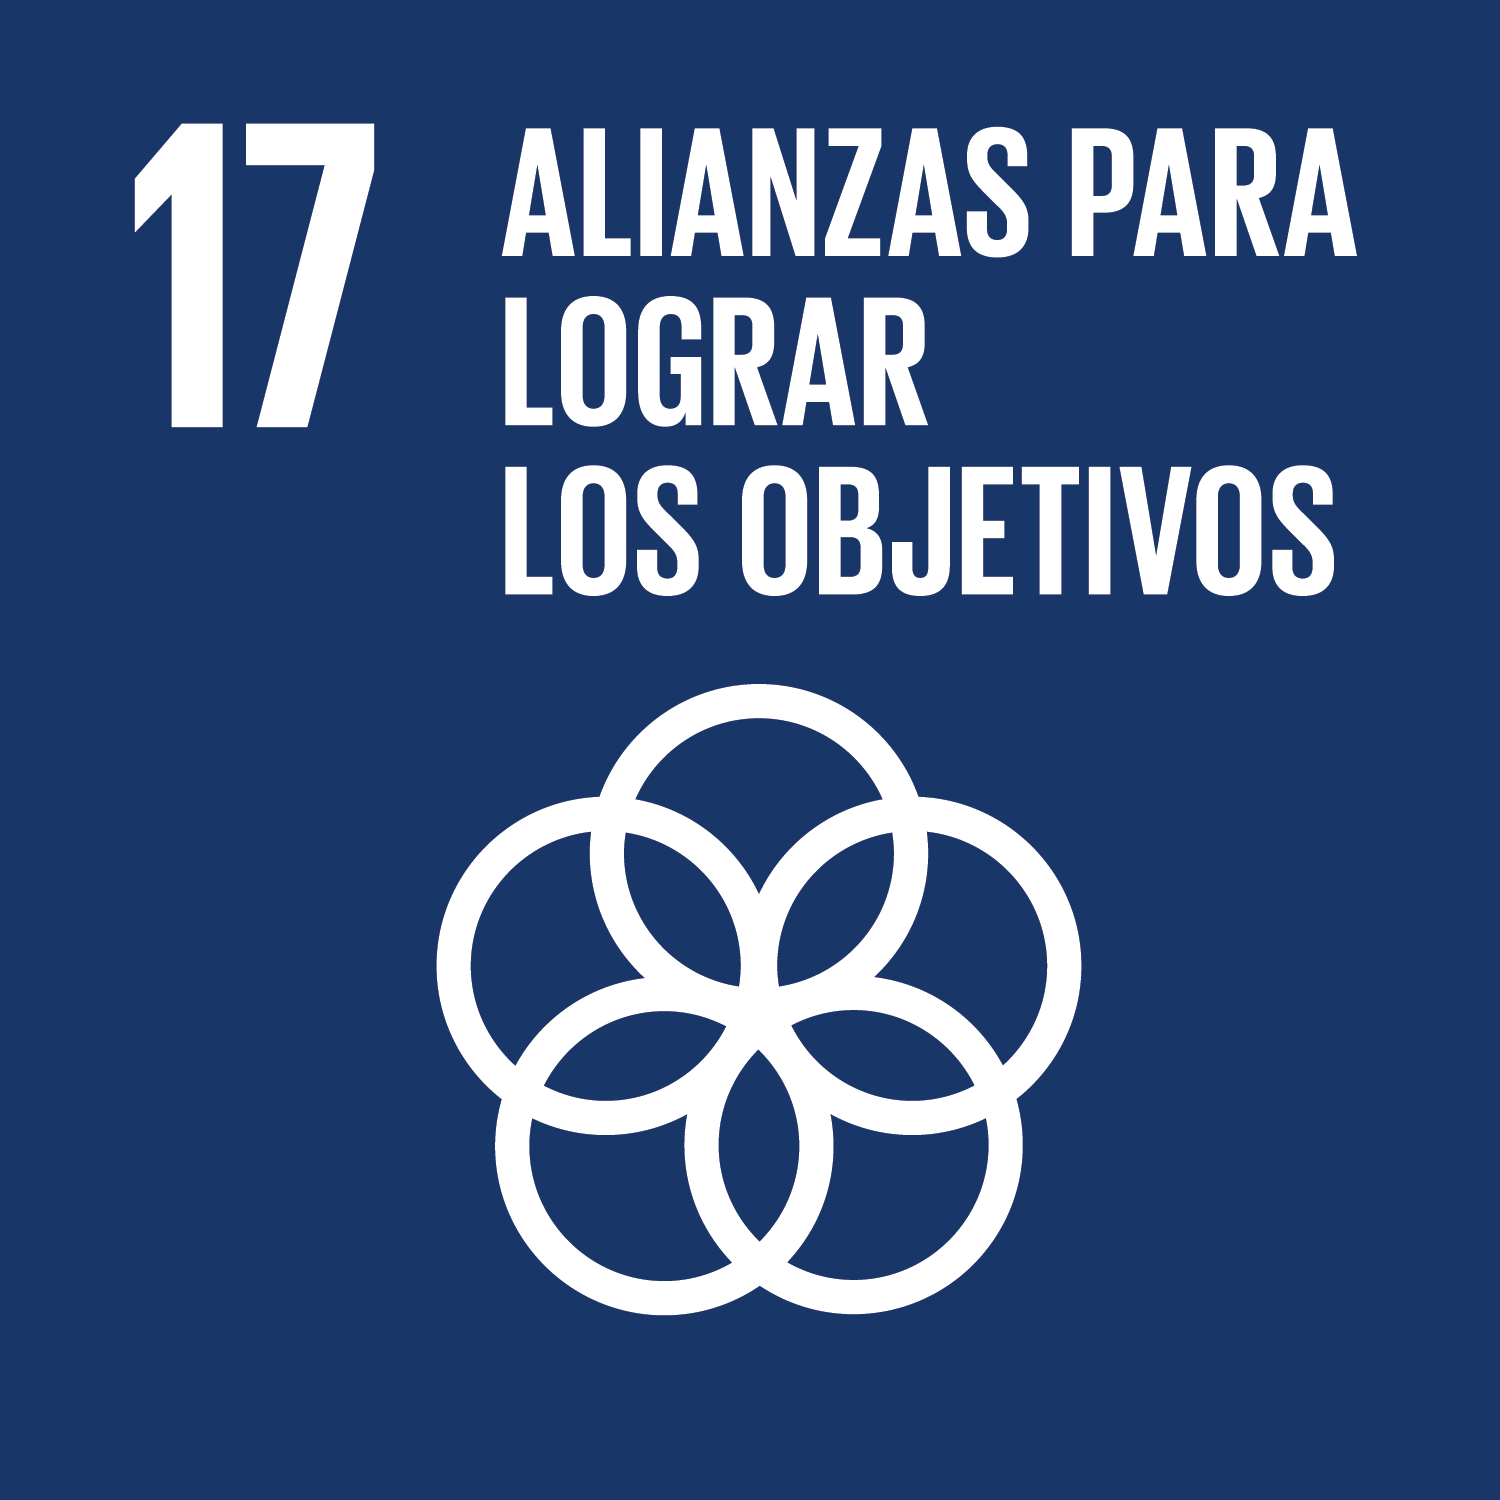 ODS Objetivo 17: Alianzas para lograr los objetivos